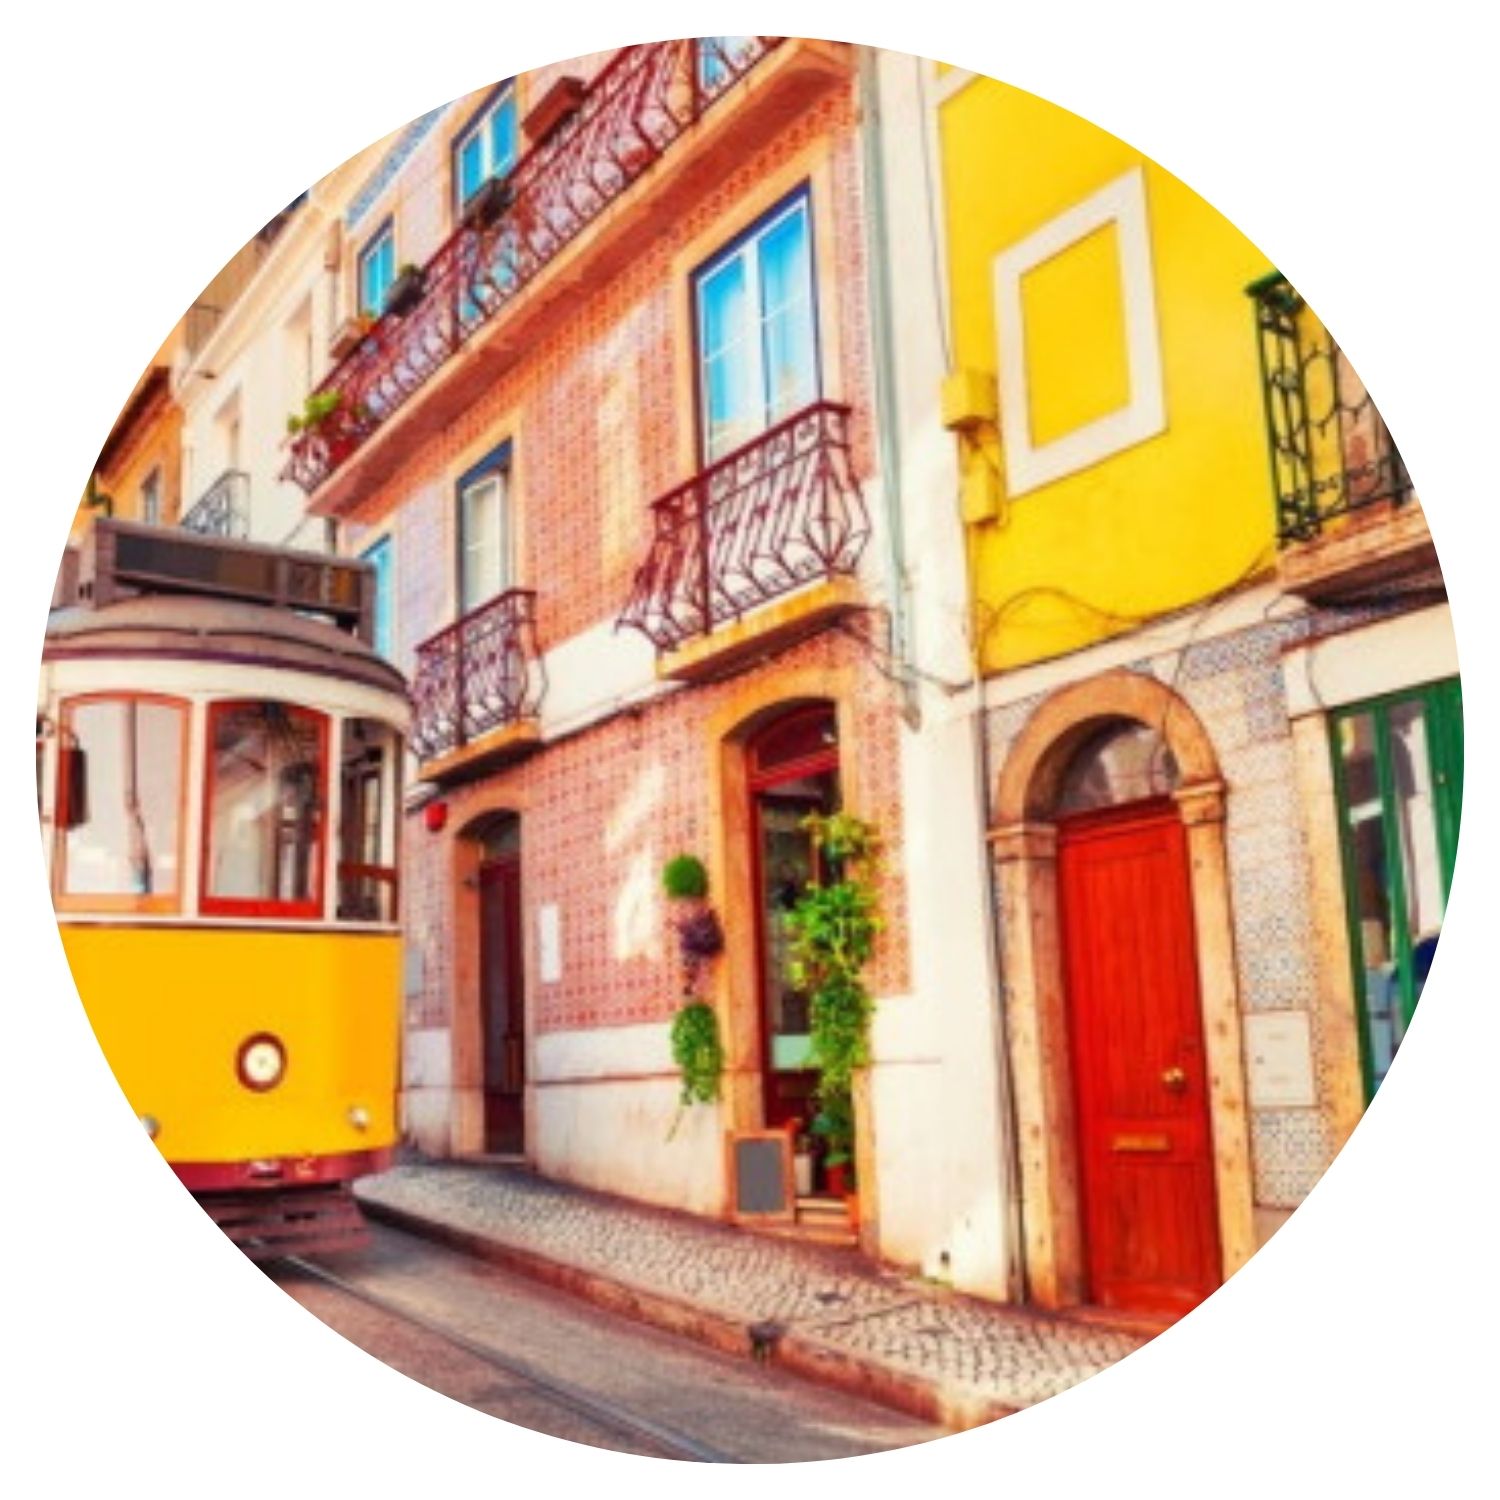 Une image pittoresque de la ville de Lisbonne, au Portugal, montrant des maisons colorées emblématiques et un tramway jaune, symbole célèbre des transports en commun portugais.